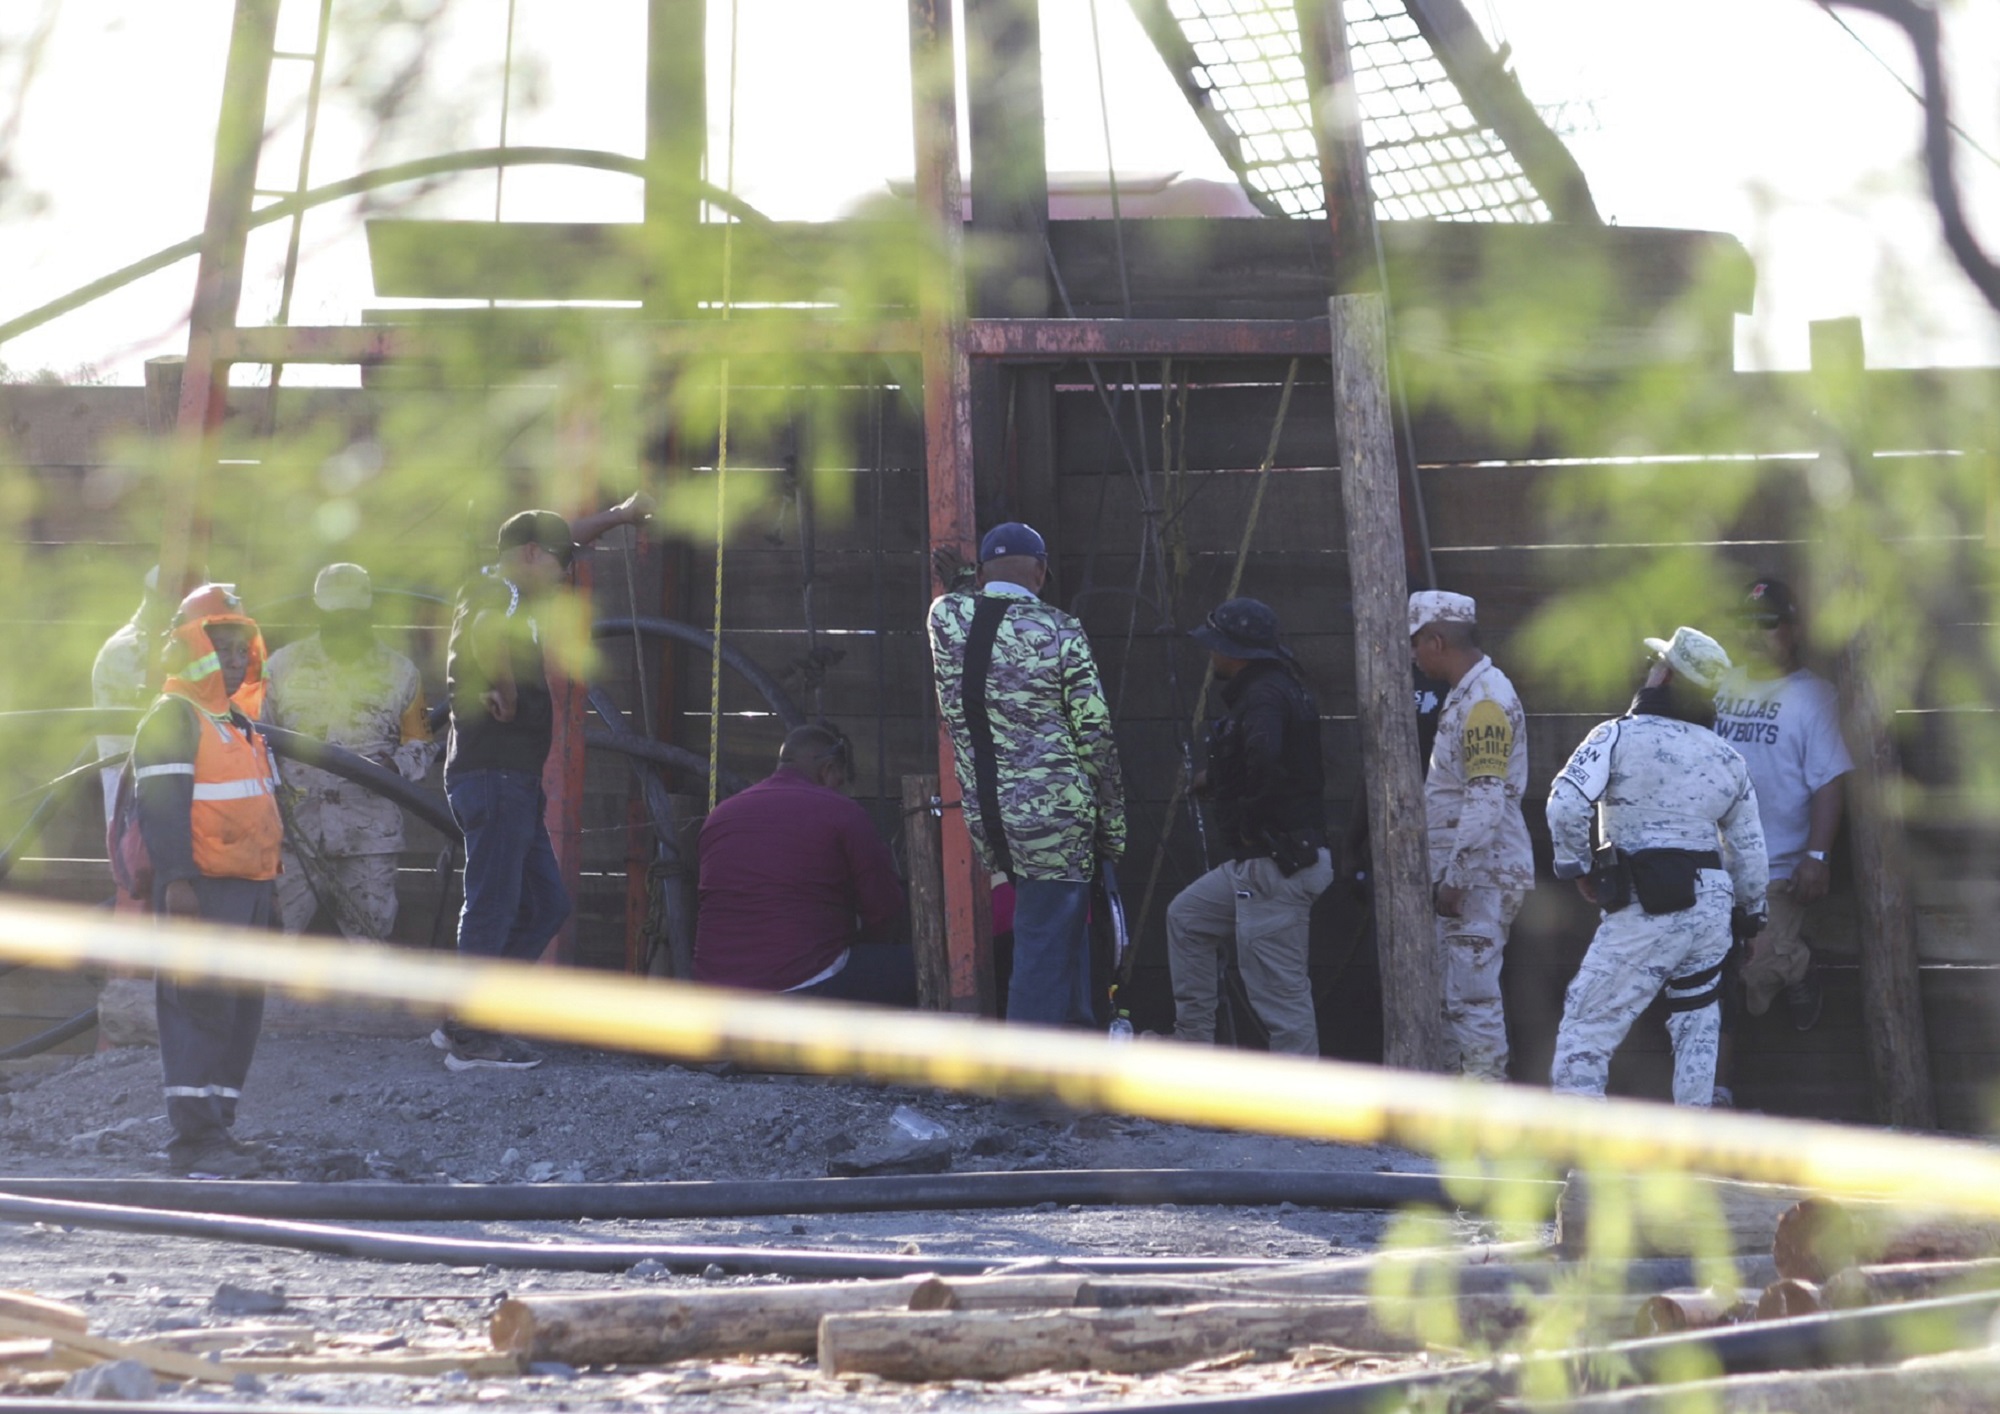 Μεξικό: Άκαρπη προσπάθεια δύτη να μπει σε πλημμυρισμένη στοά ορυχείου με δέκα εργαζόμενους